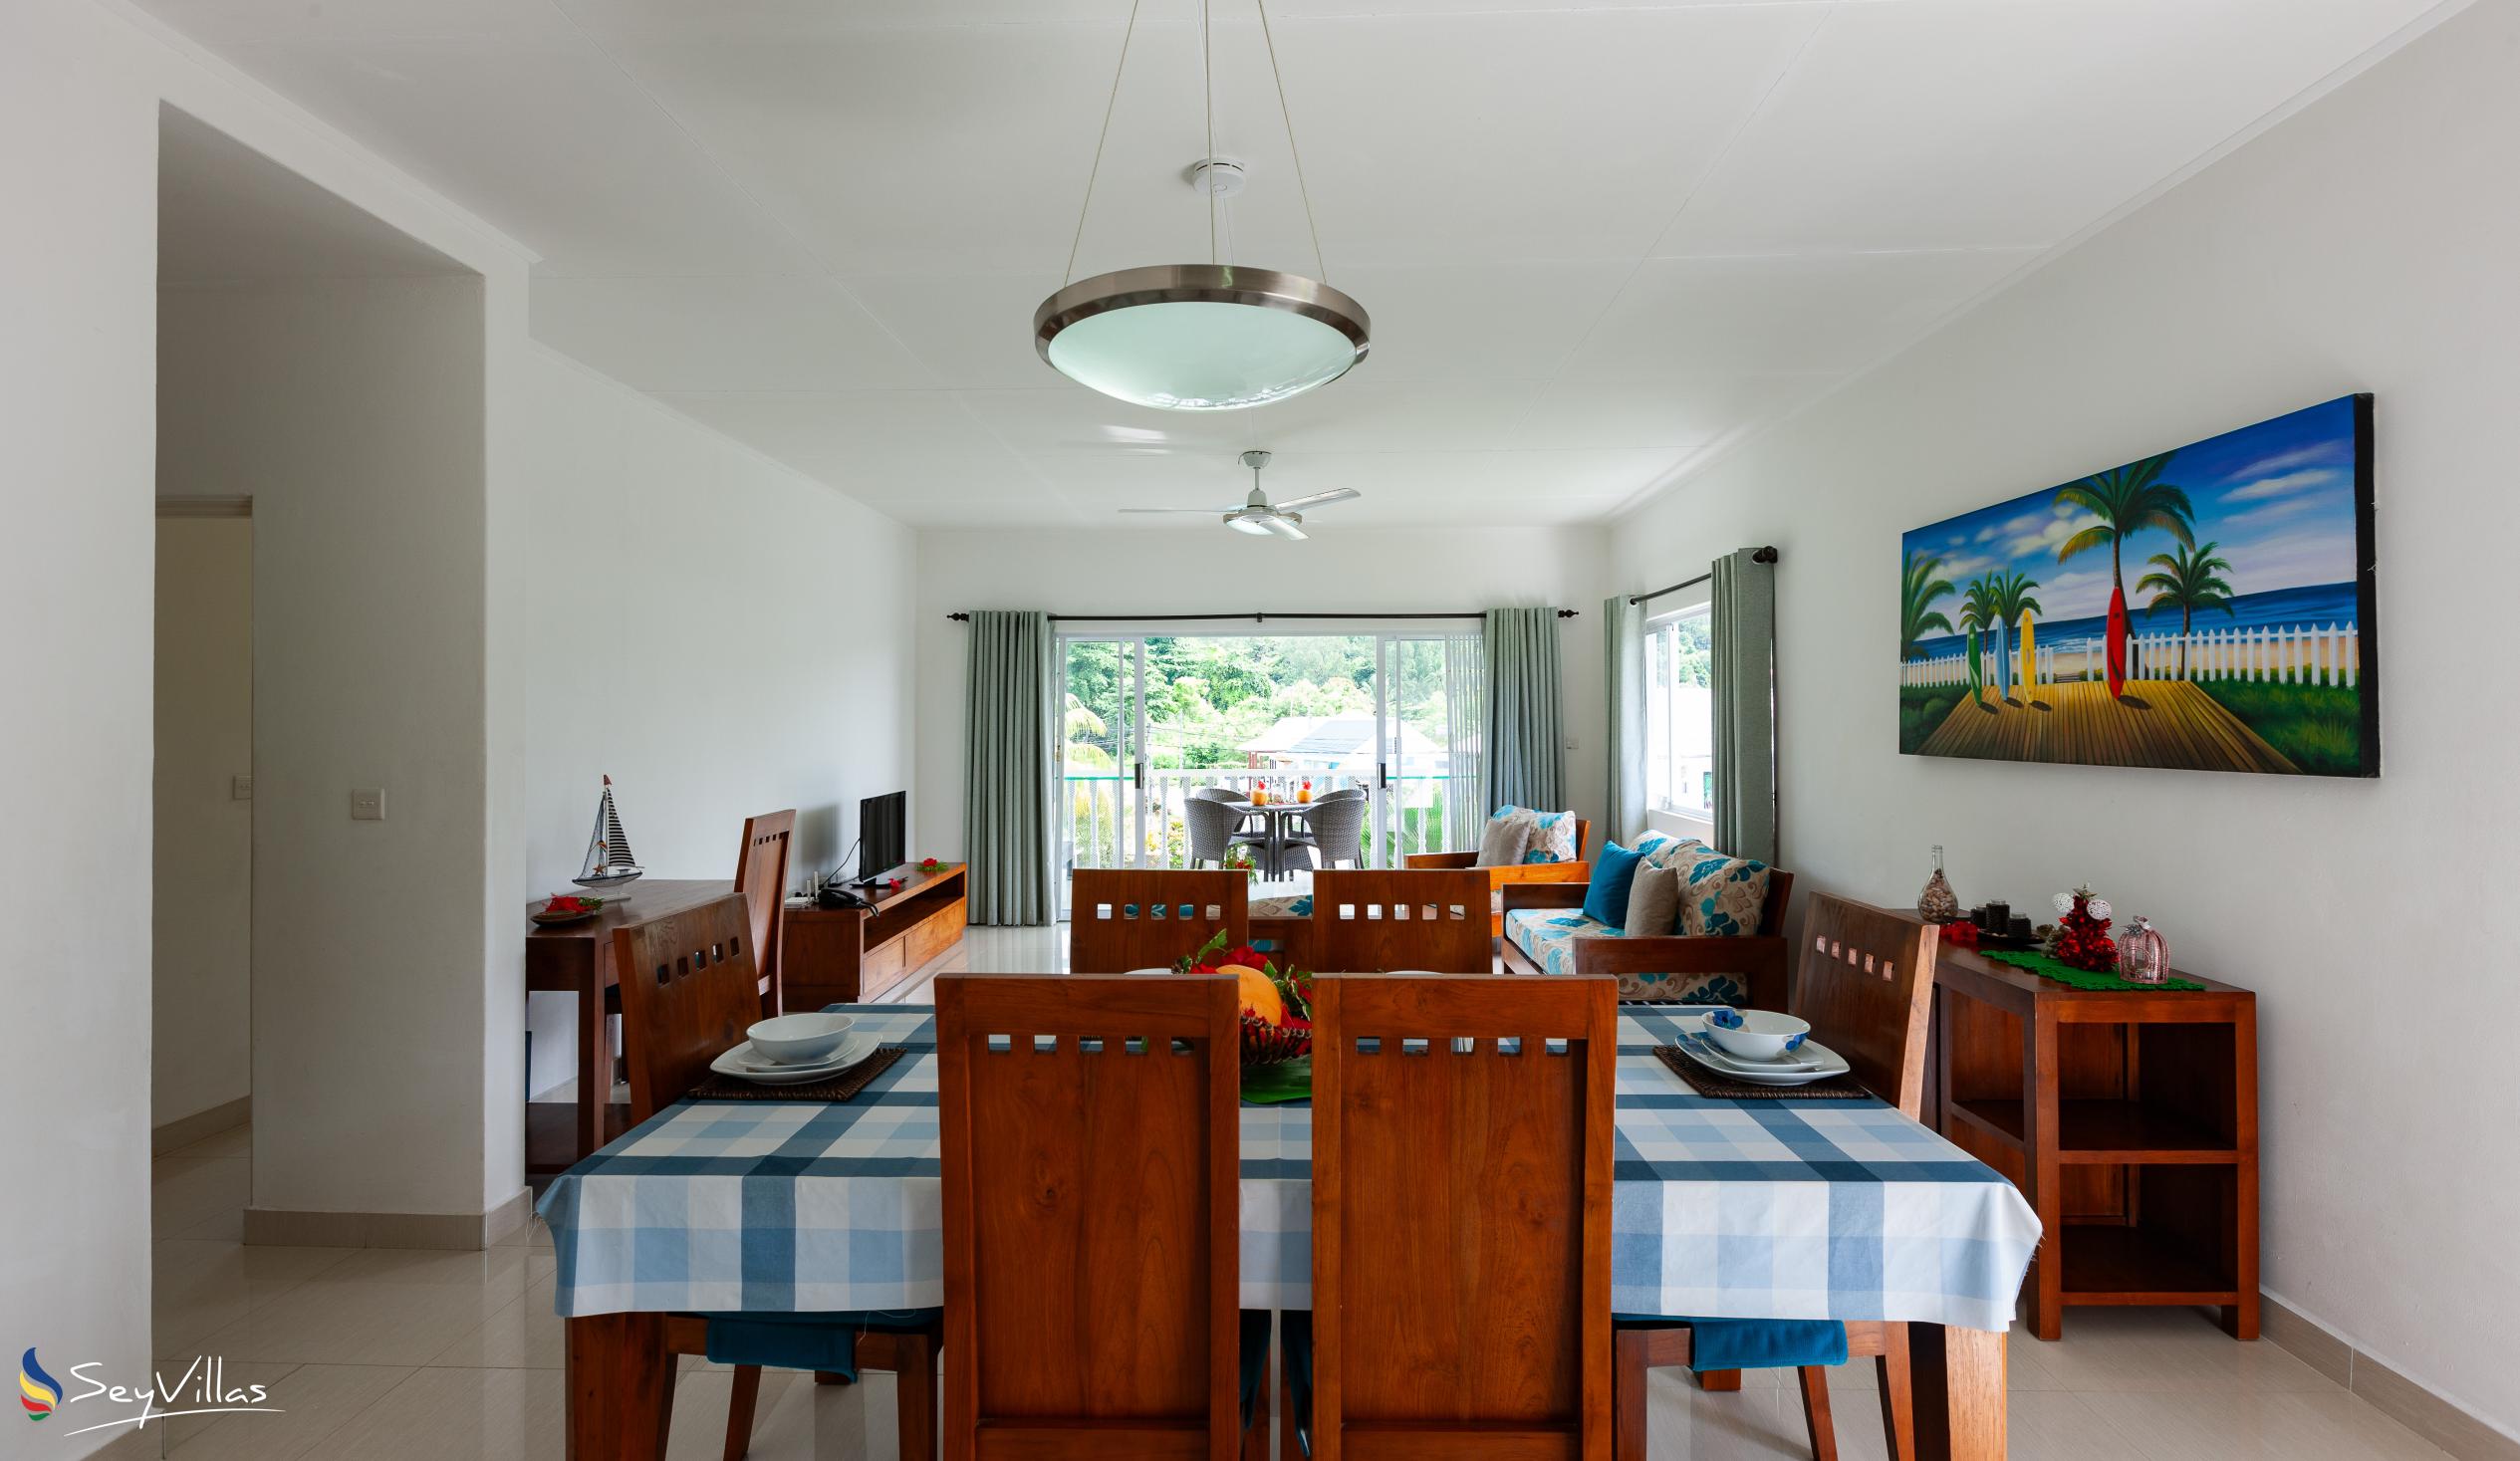 Foto 20: Casa Tara Villas - Appartamento con 2 camere - Praslin (Seychelles)